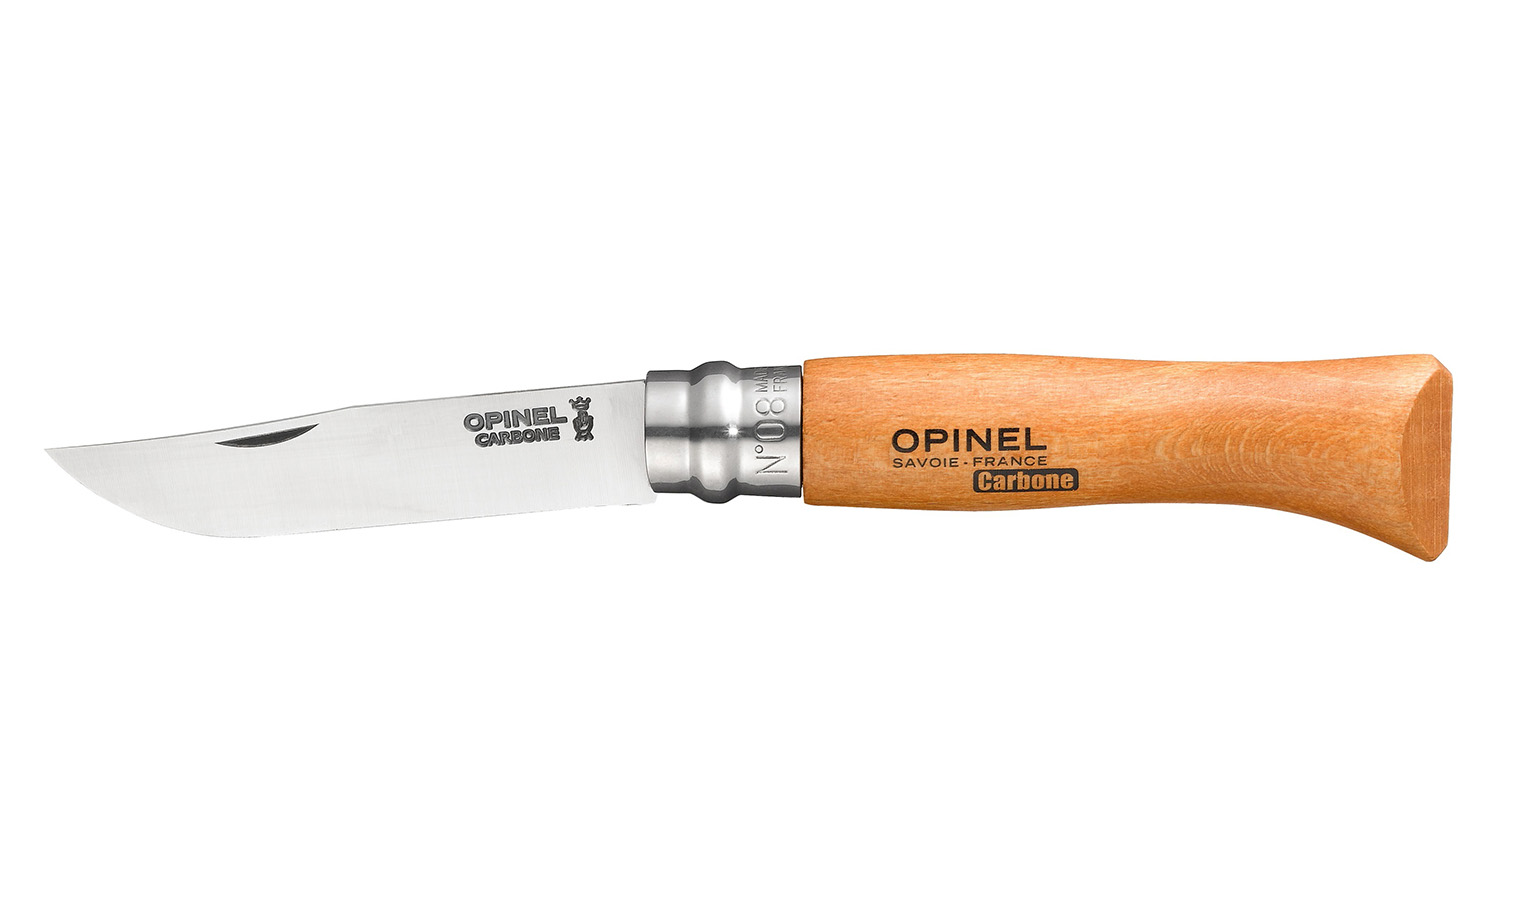 Opinel knife model virobloc n.8 steel blade mm.85